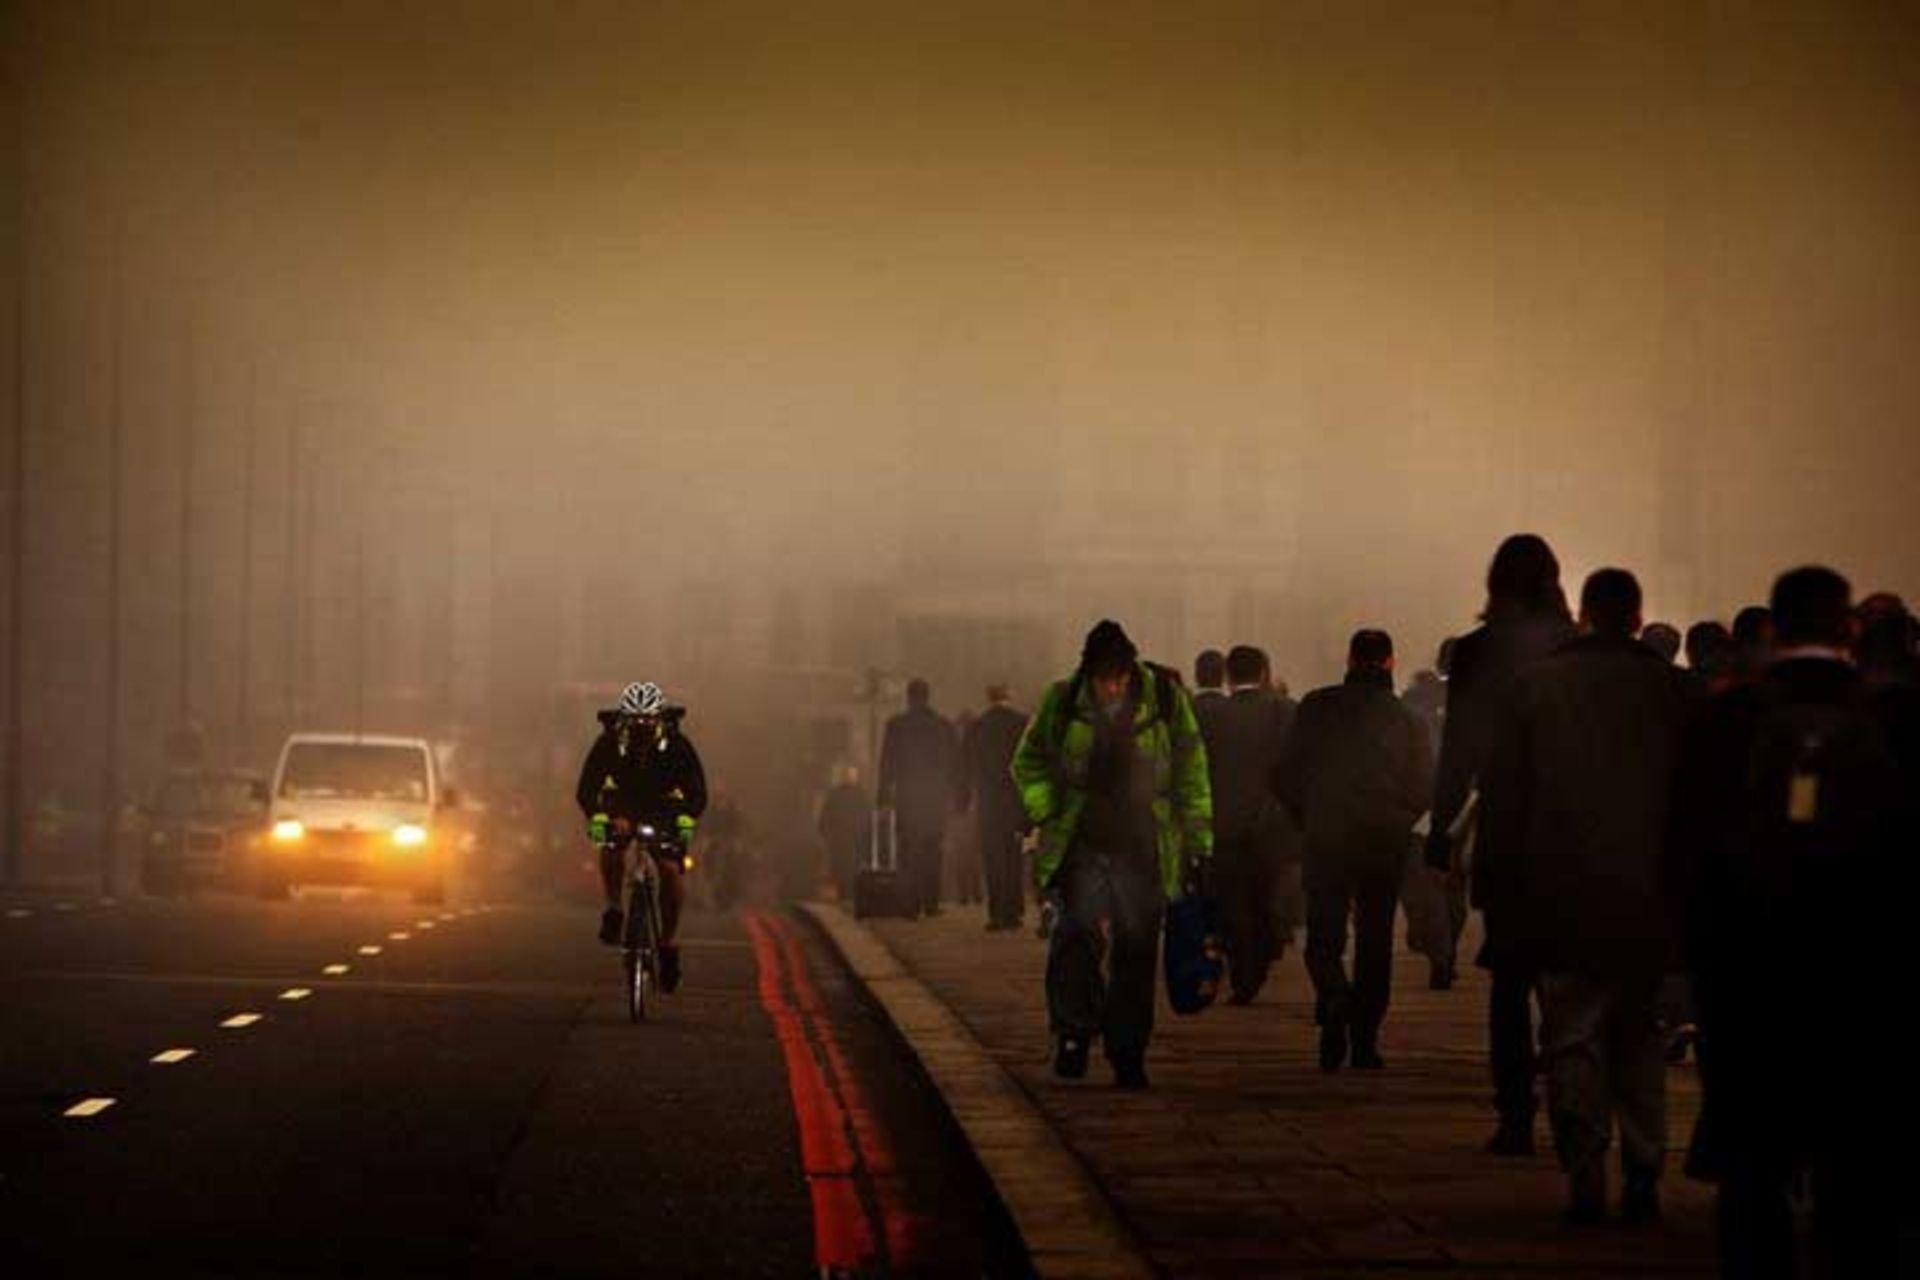 مرجع متخصصين ايران آلودگي هوا در لندن